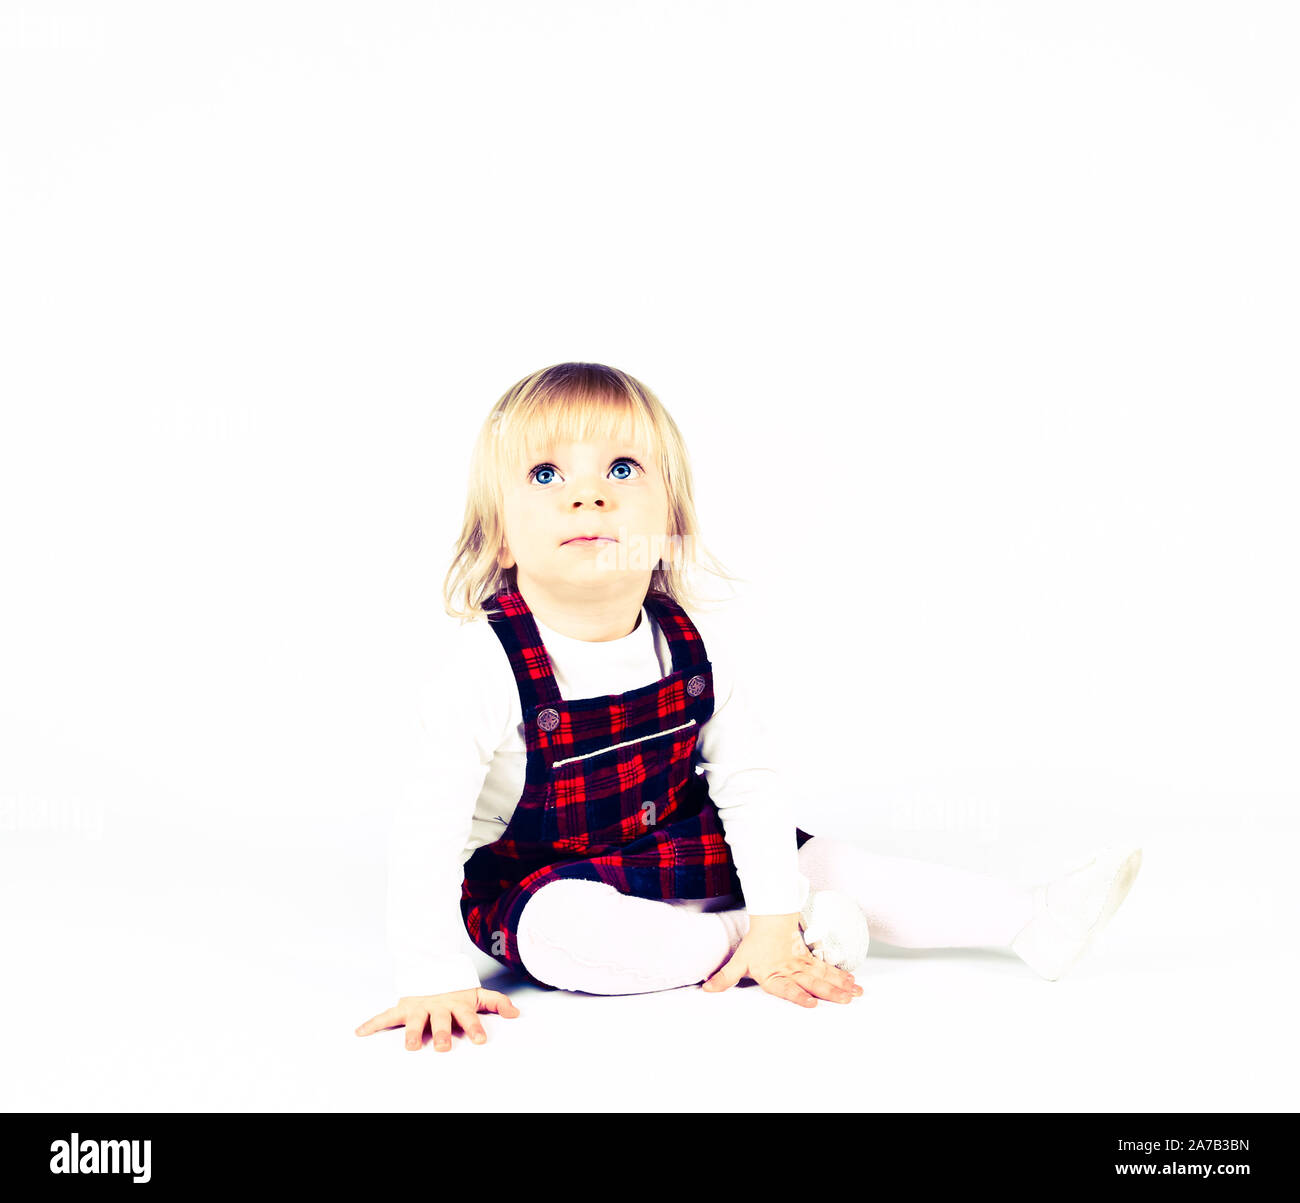 Petite blonde bébé fille avec de grands yeux bleus en robe rouge assise sur le sol, fond blanc. Portrait isolé Banque D'Images